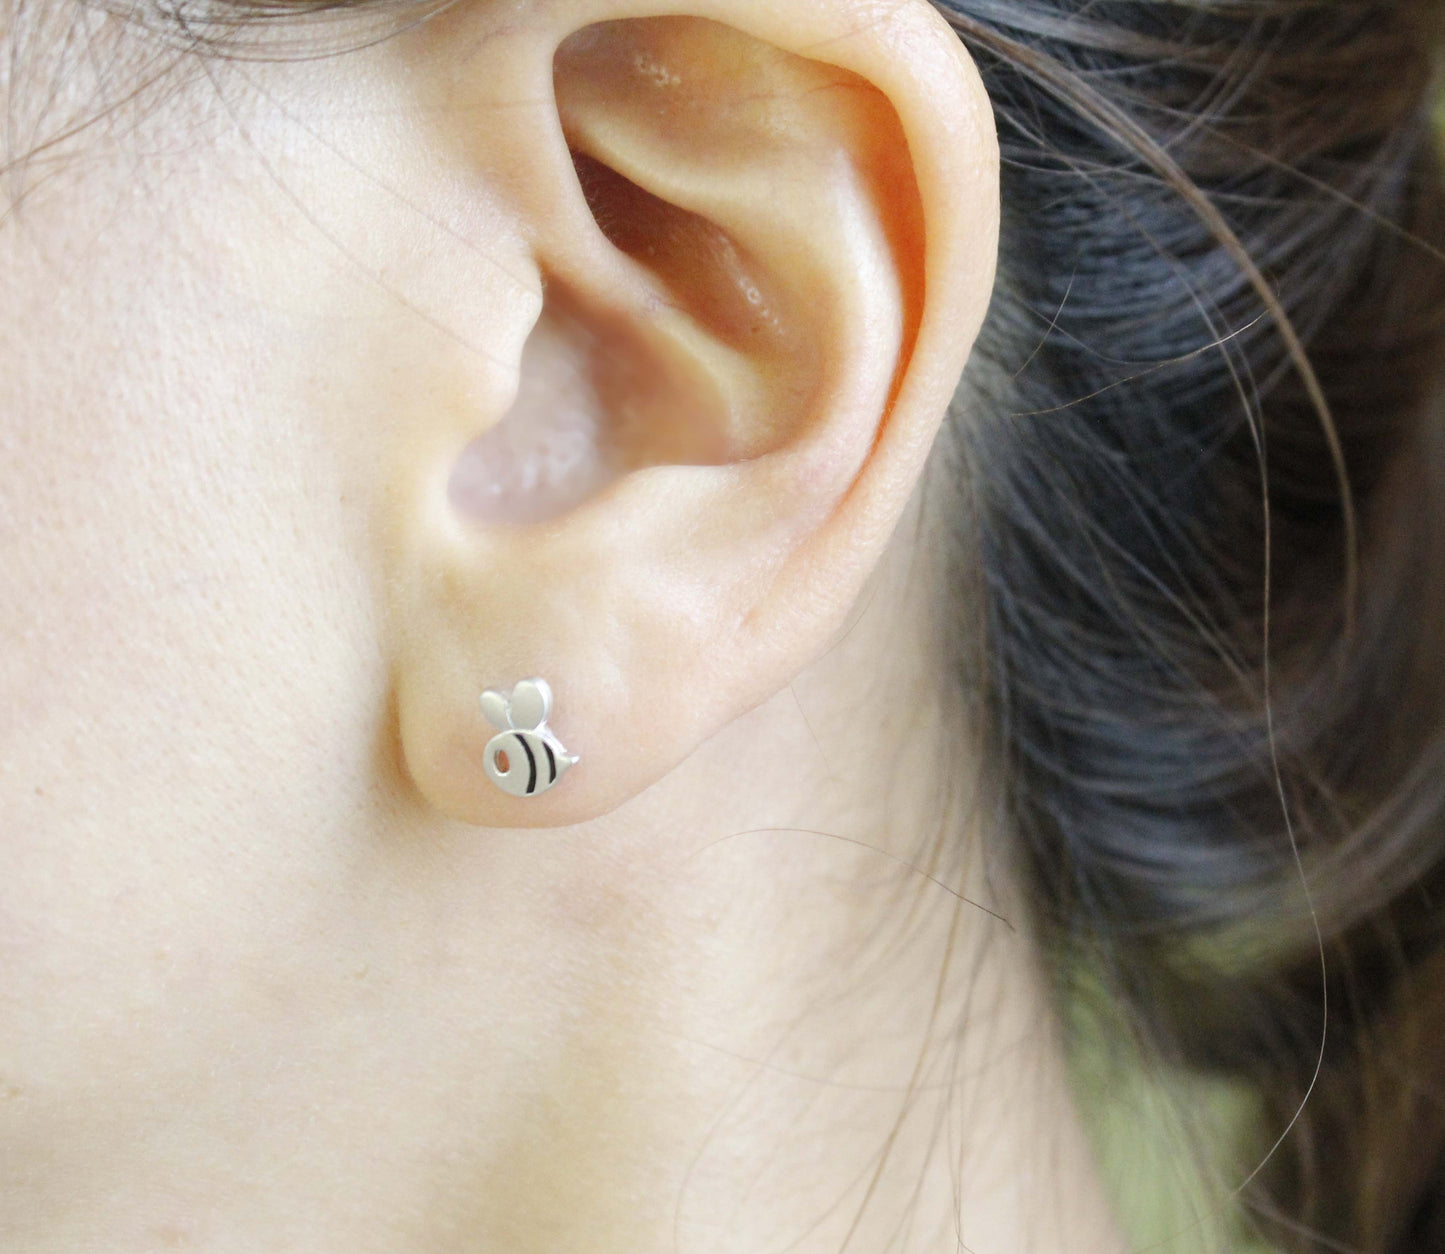 Cute Honeybee stud earrings, Bee earrings in 2 colors